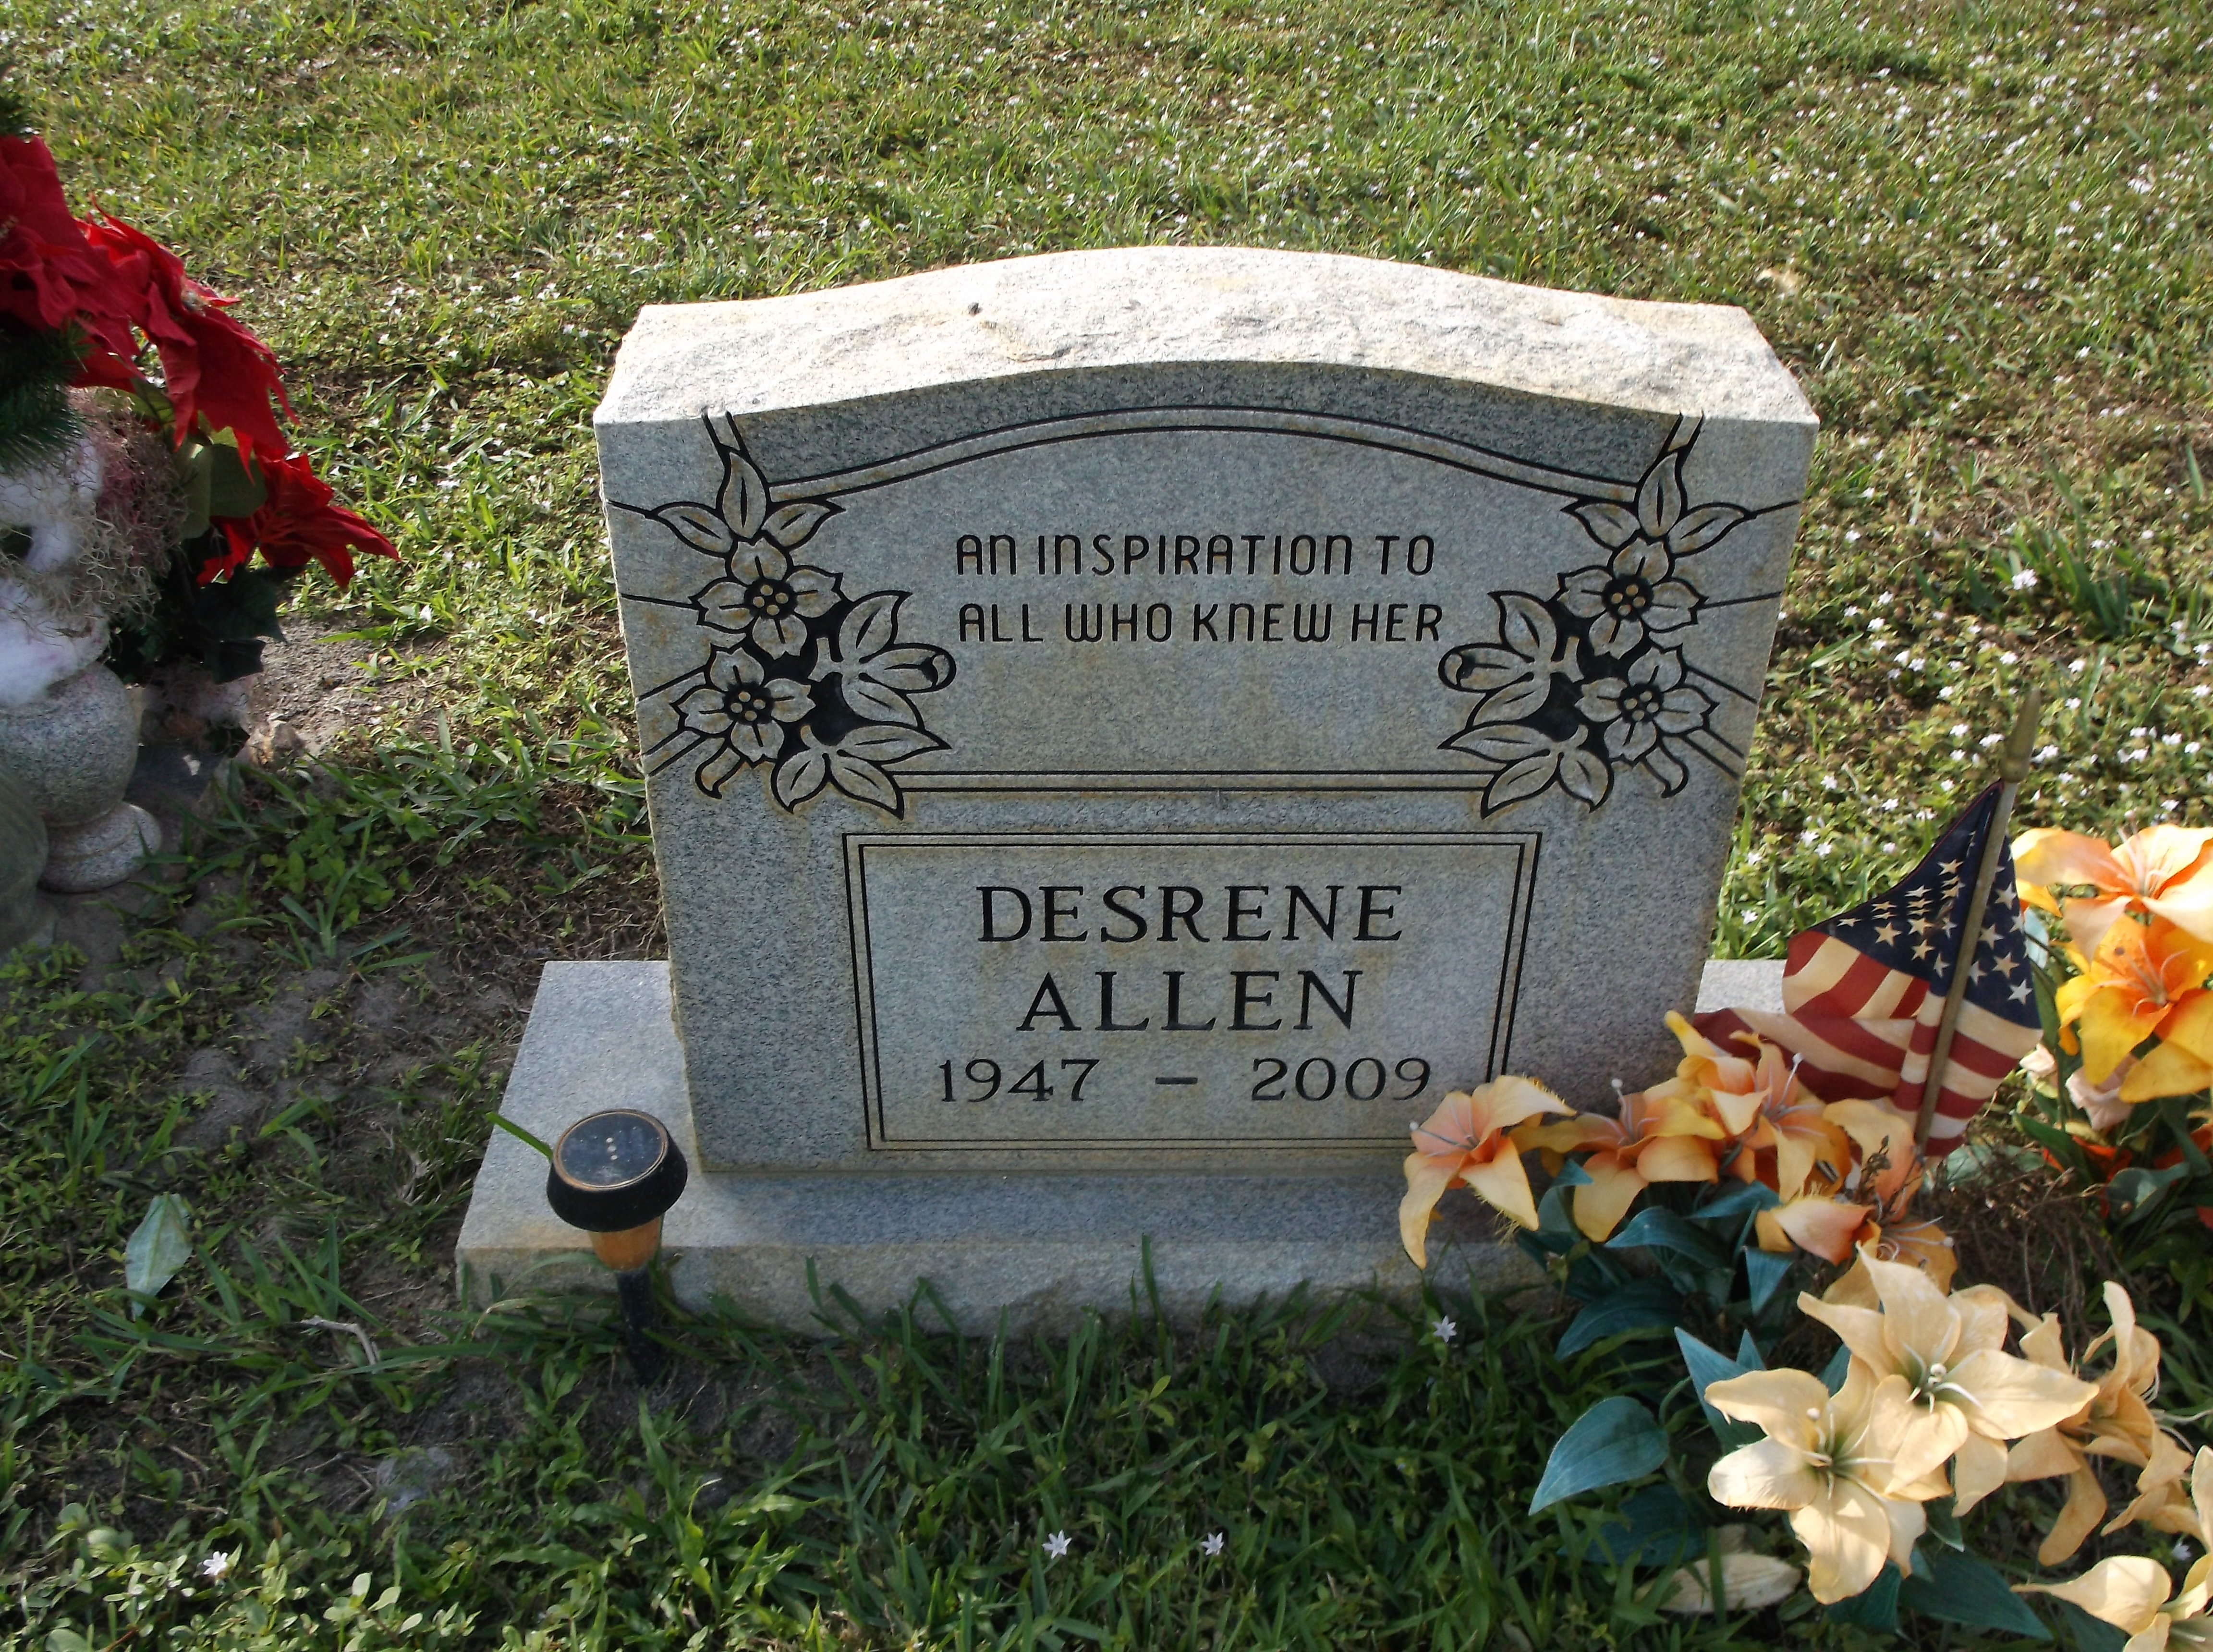 Desrene Allen